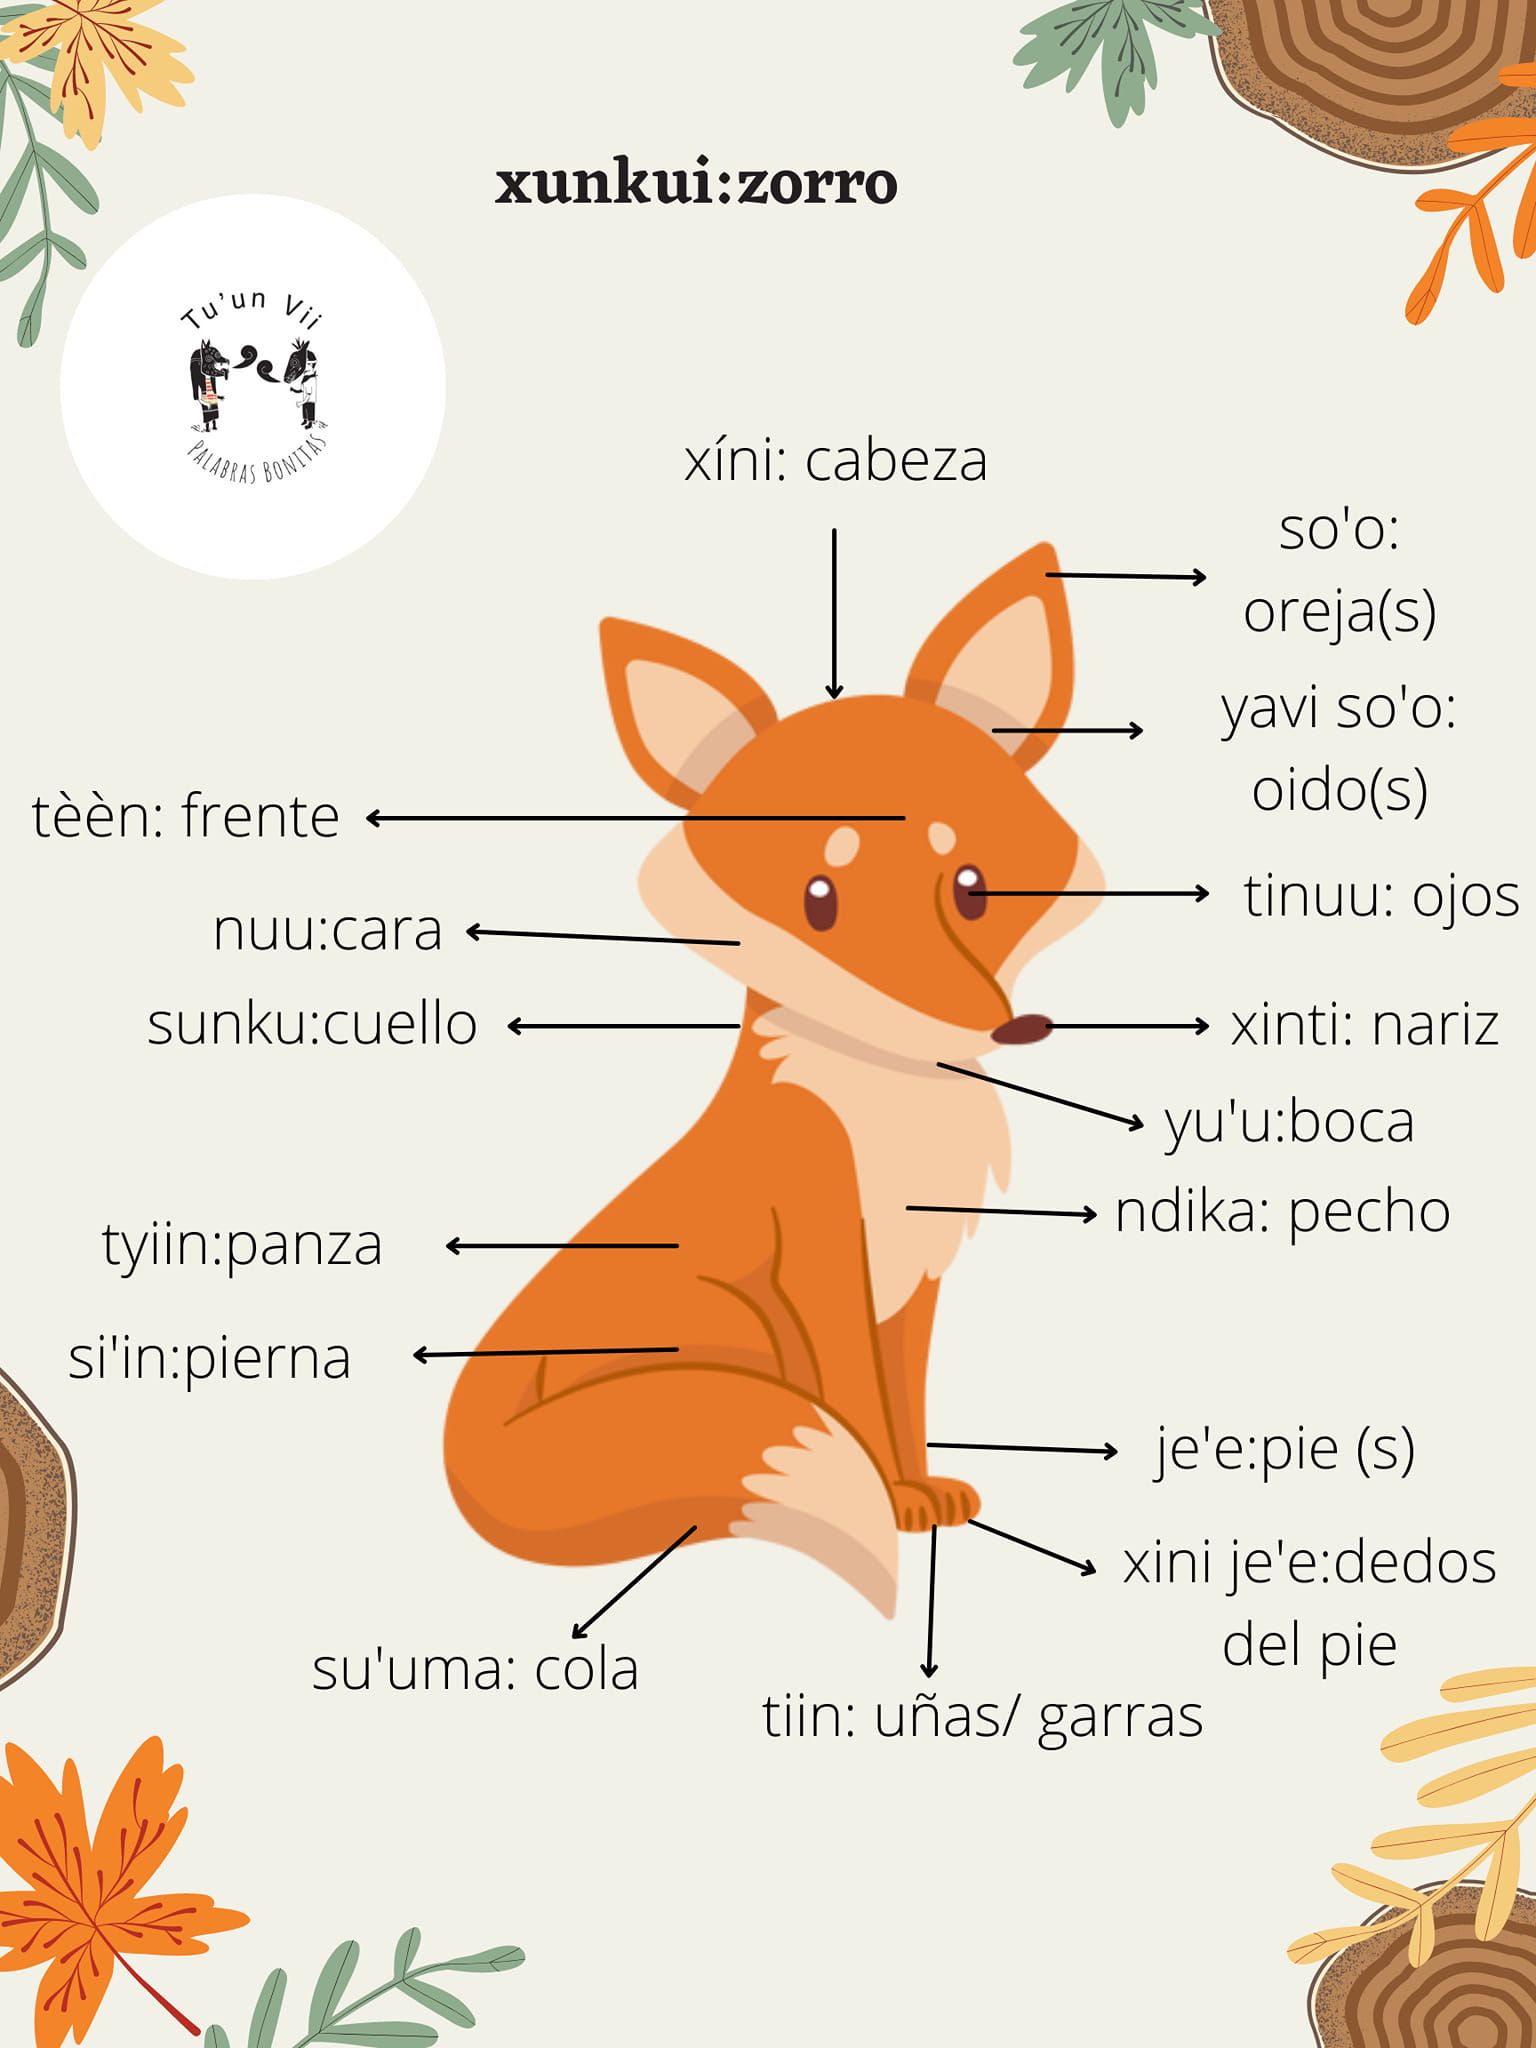 Parts of a cartoon fox labeled in Mixtec and Spanish

Partes del cuerpo de un zorro en mixteco, elaborado por Izaira López Sánchez